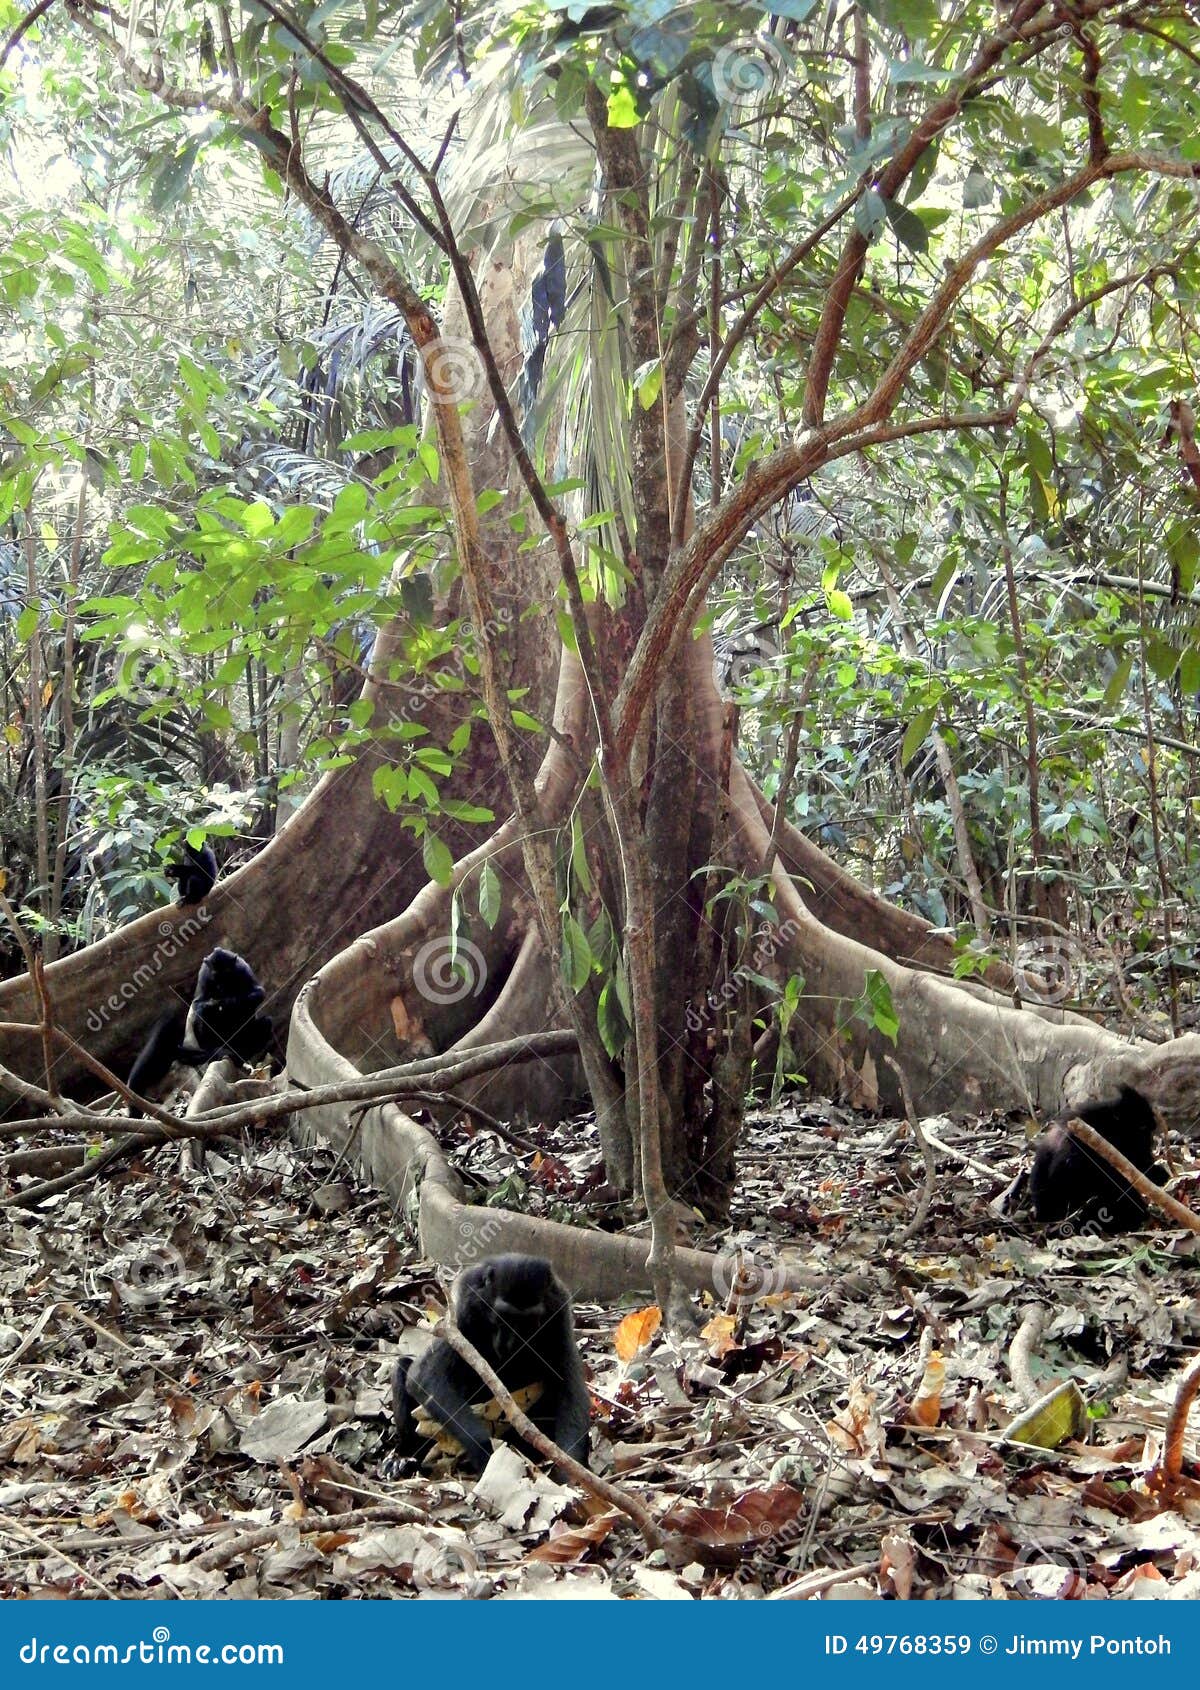 photo stock macaques noirs et racine unique de grand arbre dans la jungle image